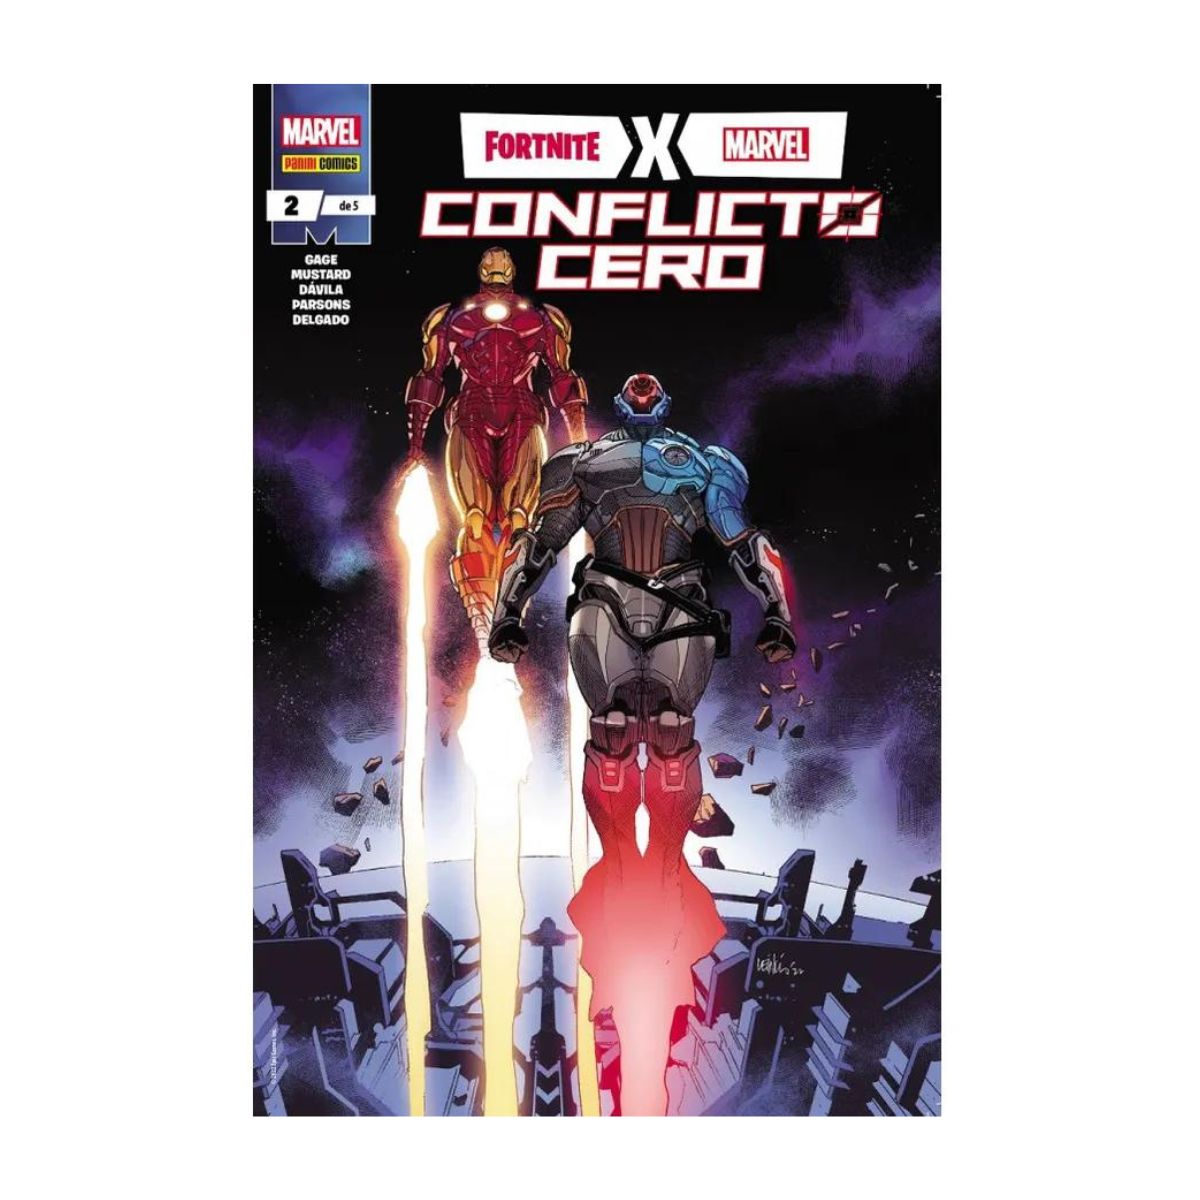 Fortnite X Marvel Conflicto Cero Panini Comics Tomo A Elegir - MarchanteMX